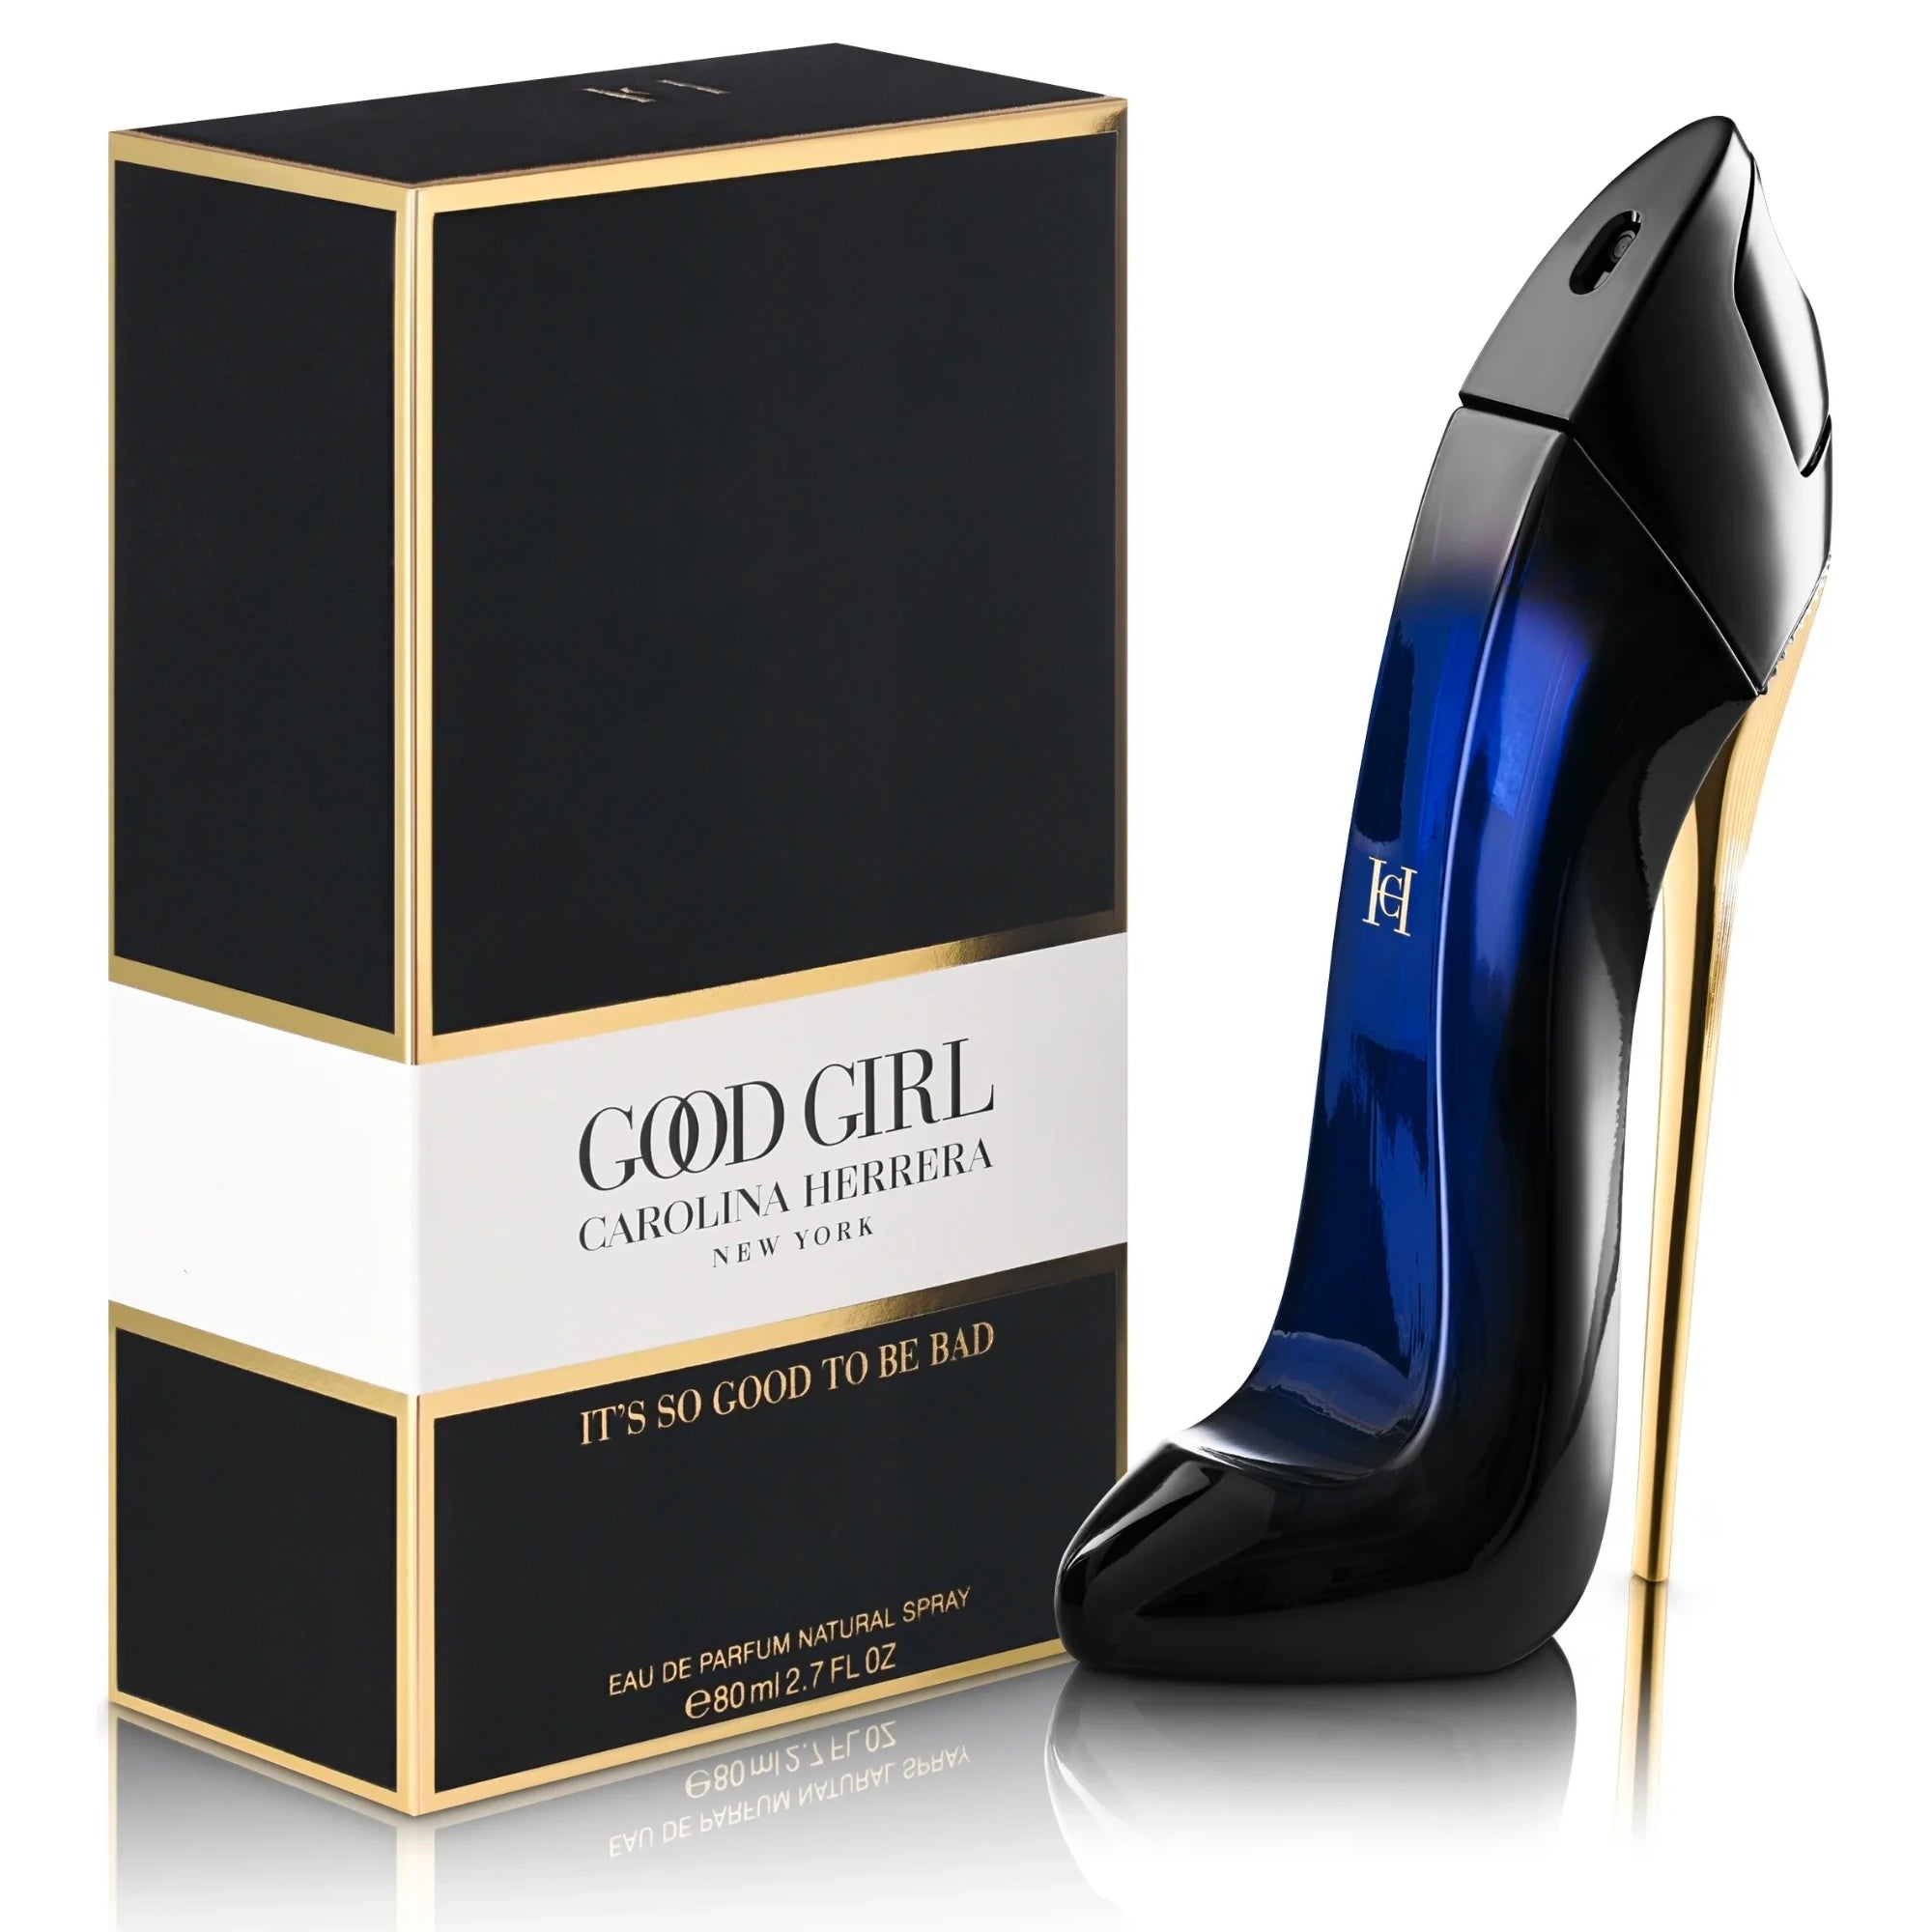 Perfume Good Girl EDP Feminino 50ml - Carolina Herrera - Condessa